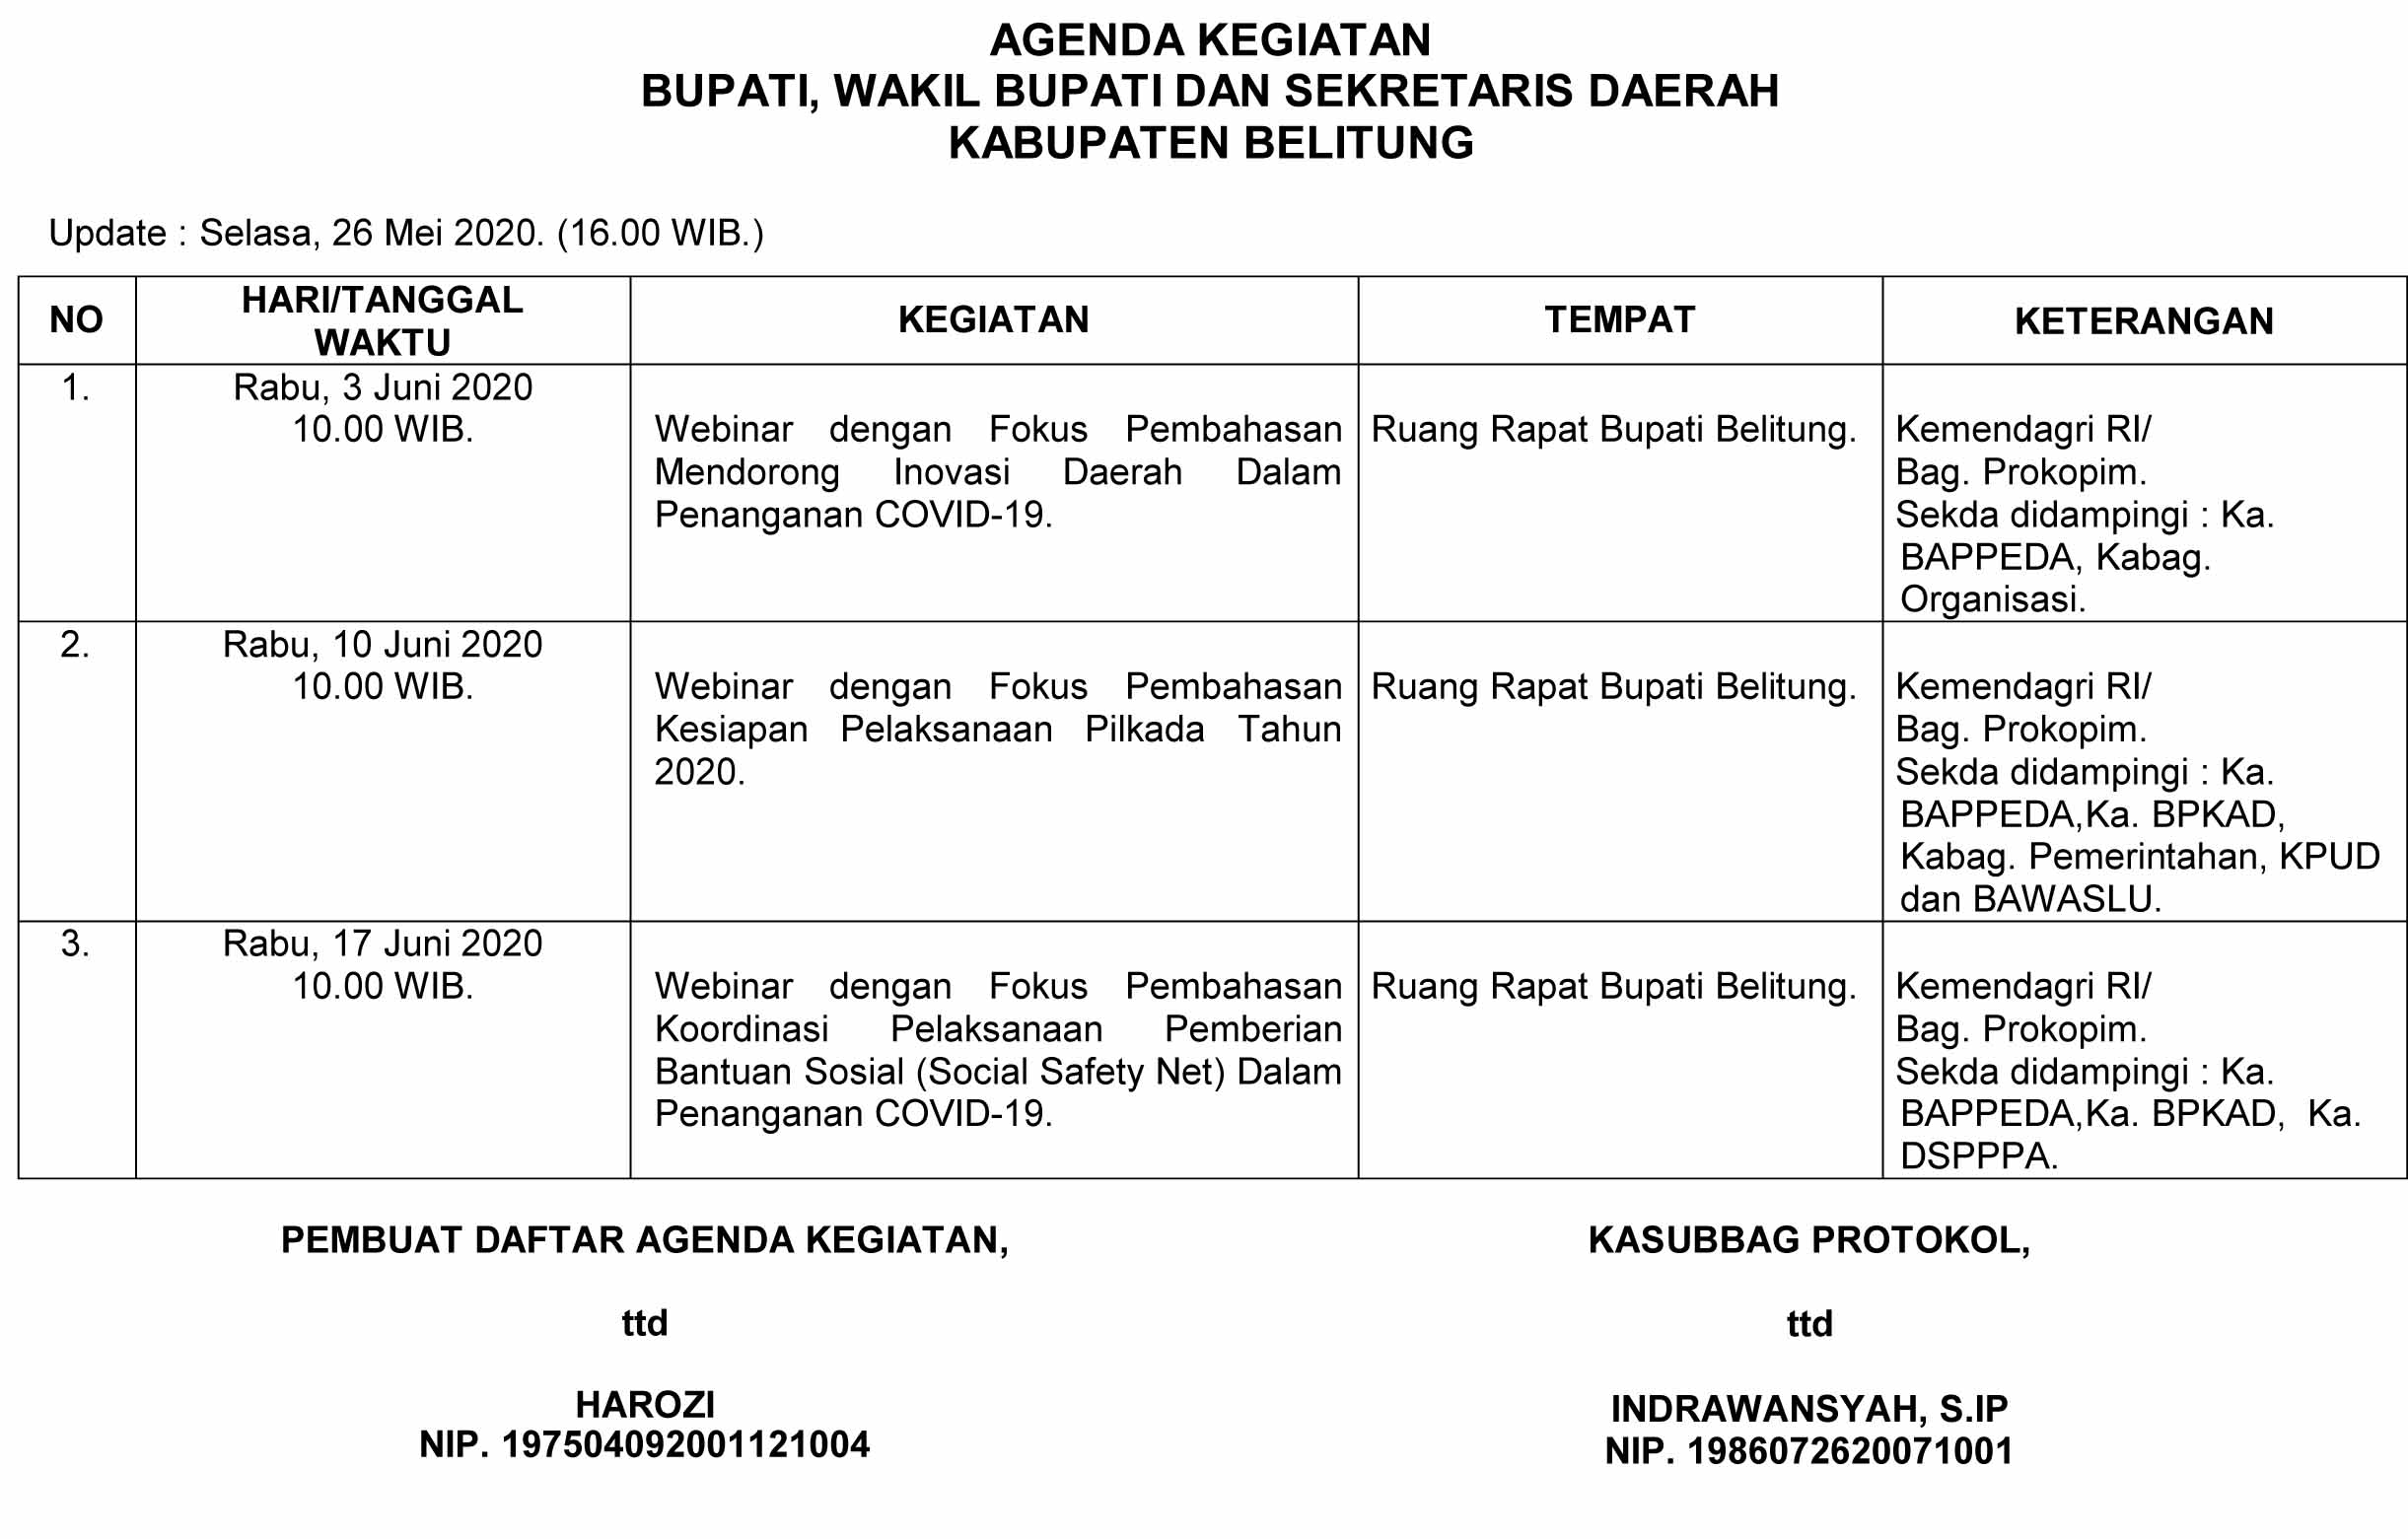 Agenda Kegiatan Pimpinan Sekretariat Daerah Kabupaten Belitung